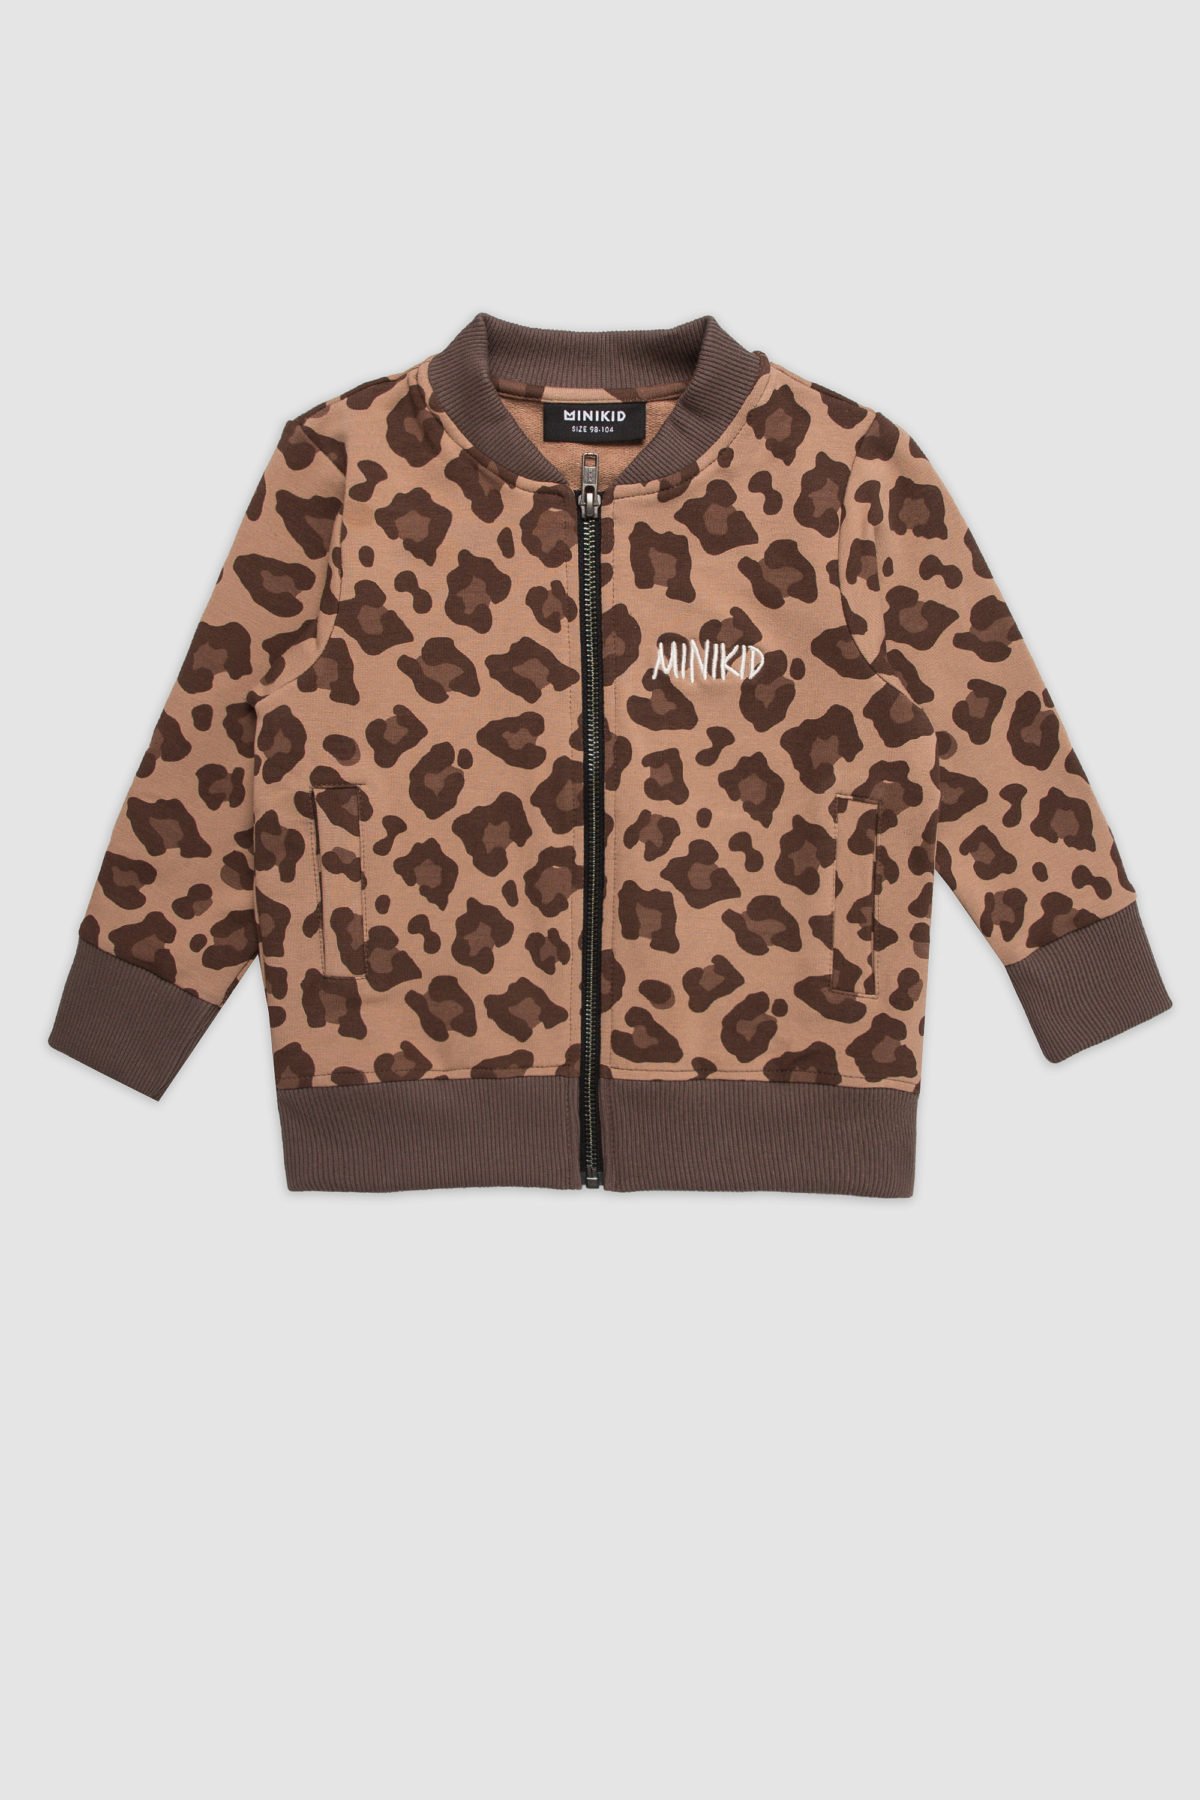 leopard bomber jacket scaled